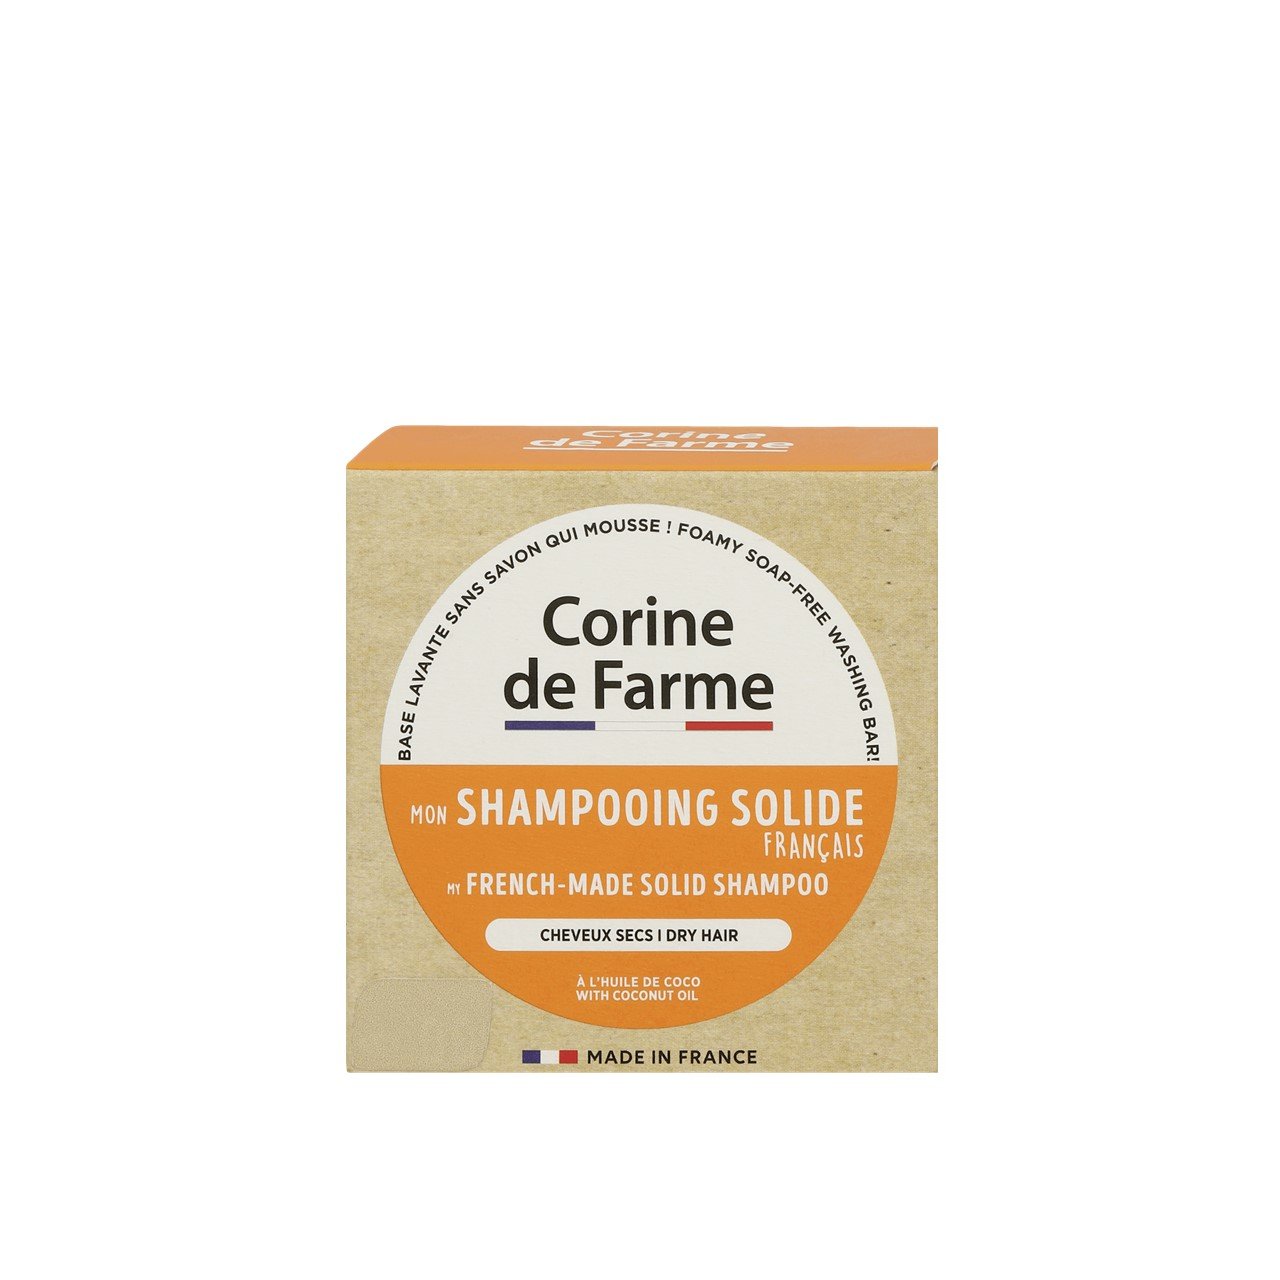 Corine de Farme Solid Shampoo With Coconut Oil 75g